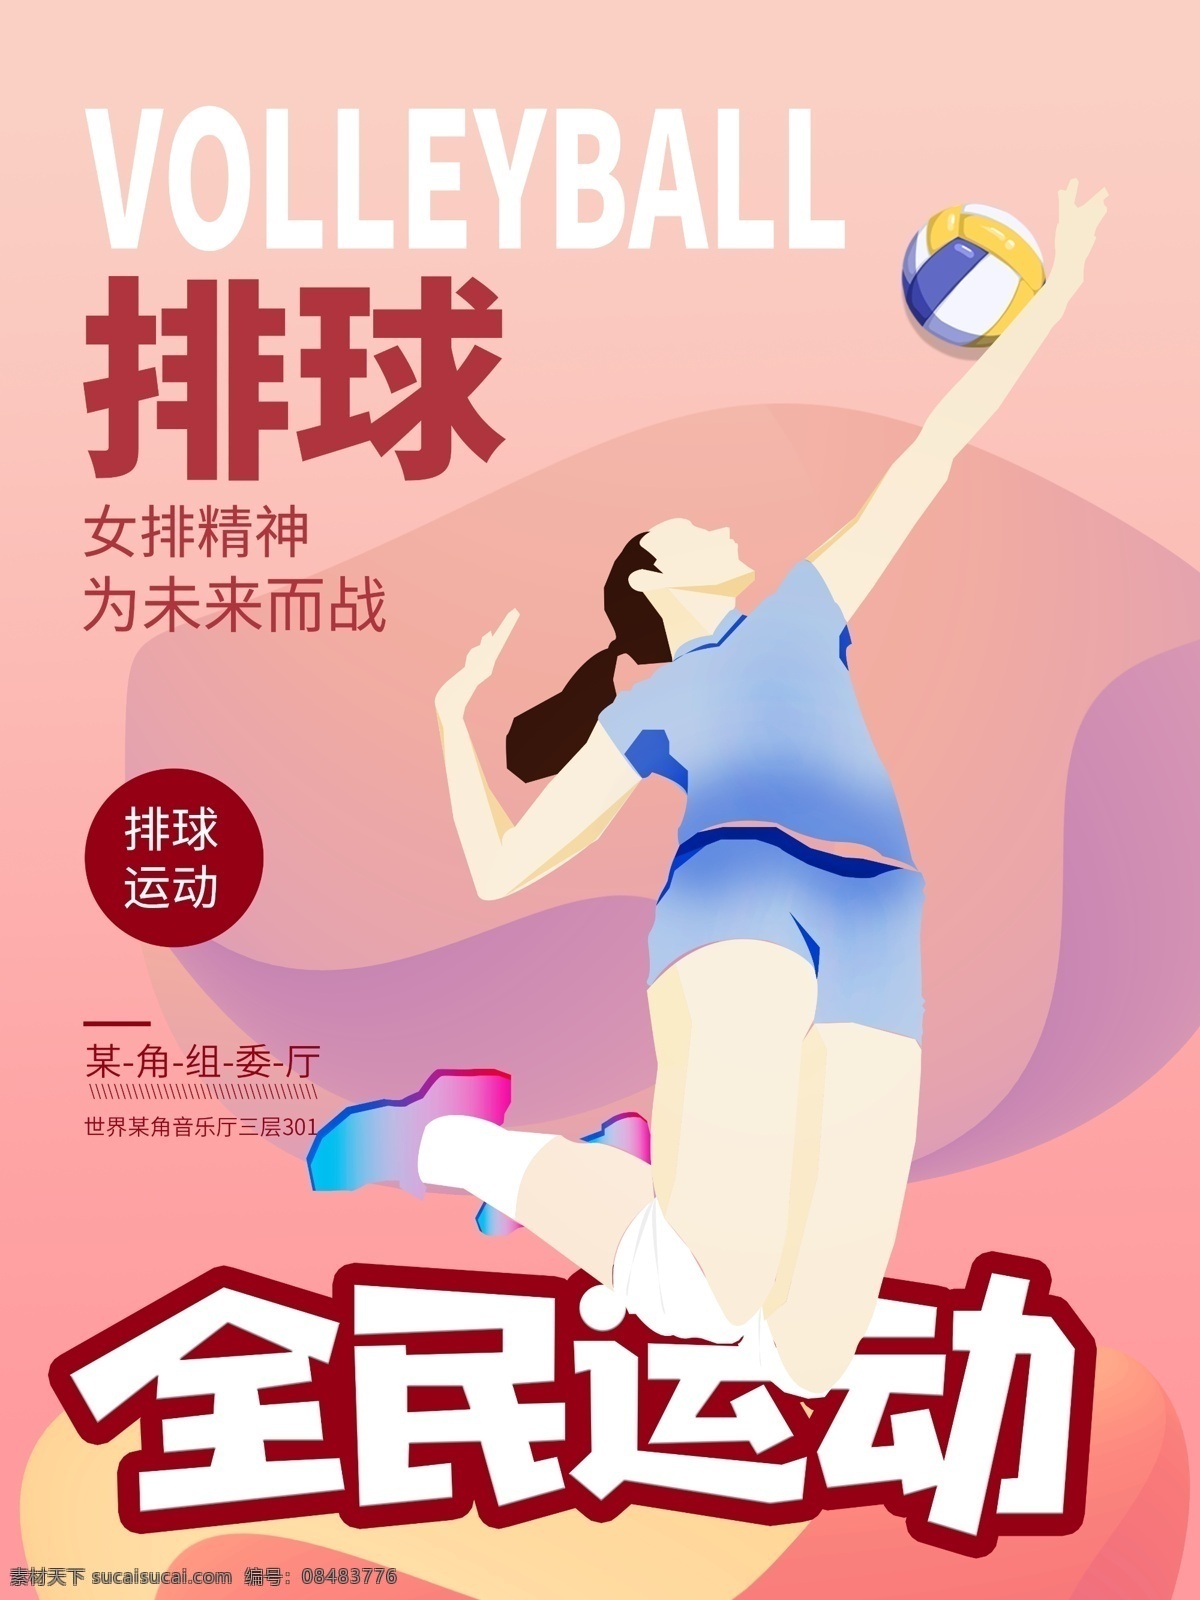 原创 插画 全民 排球 健身 海报 跳跃 全民运动 女子